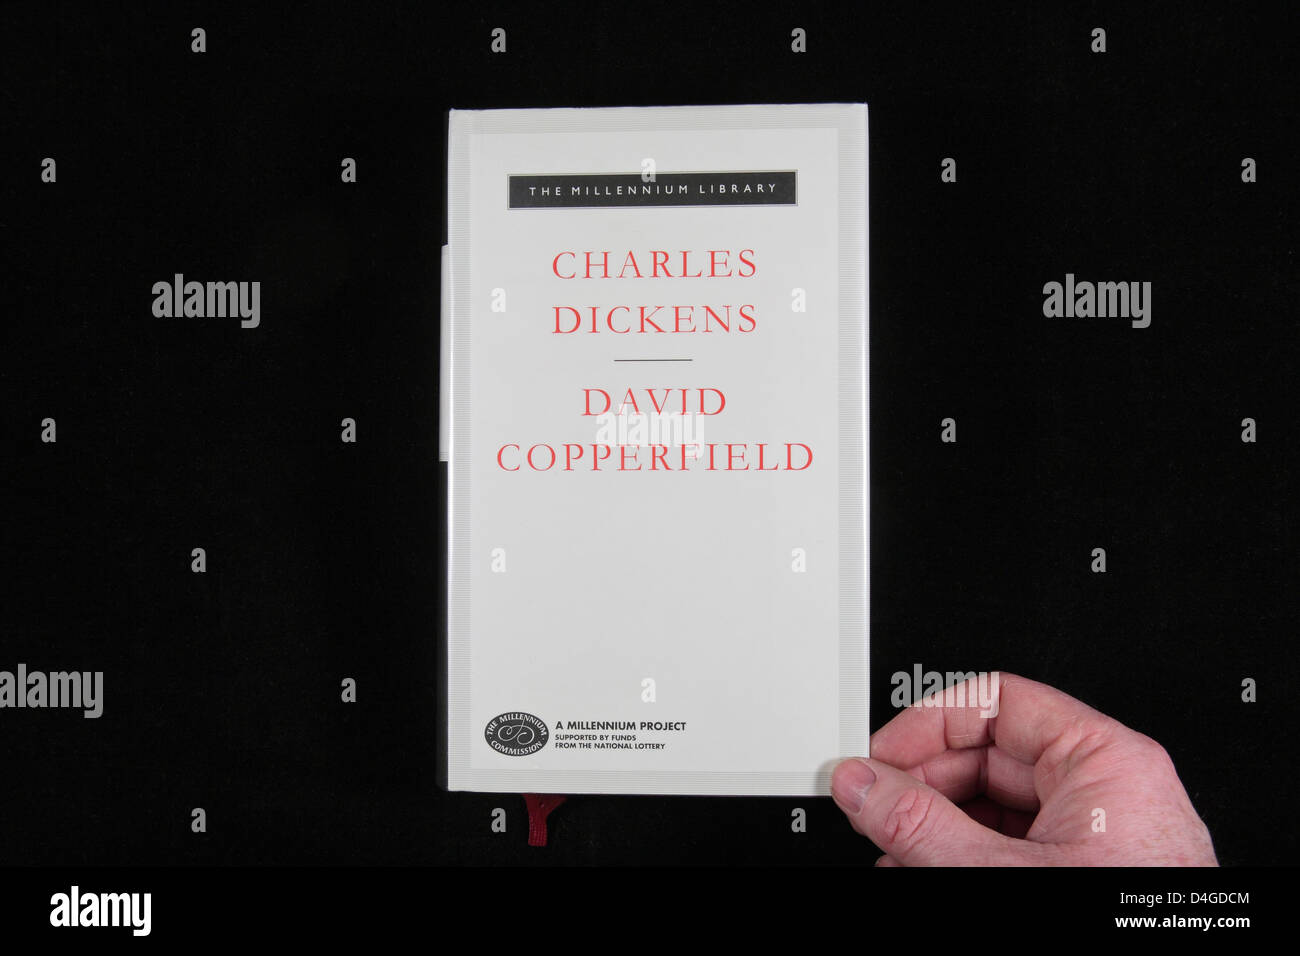 Nahaufnahme des Buchcovers von "David Copperfield" von Charles Dickens, der jedermann Millennium Project Sammlung. Stockfoto